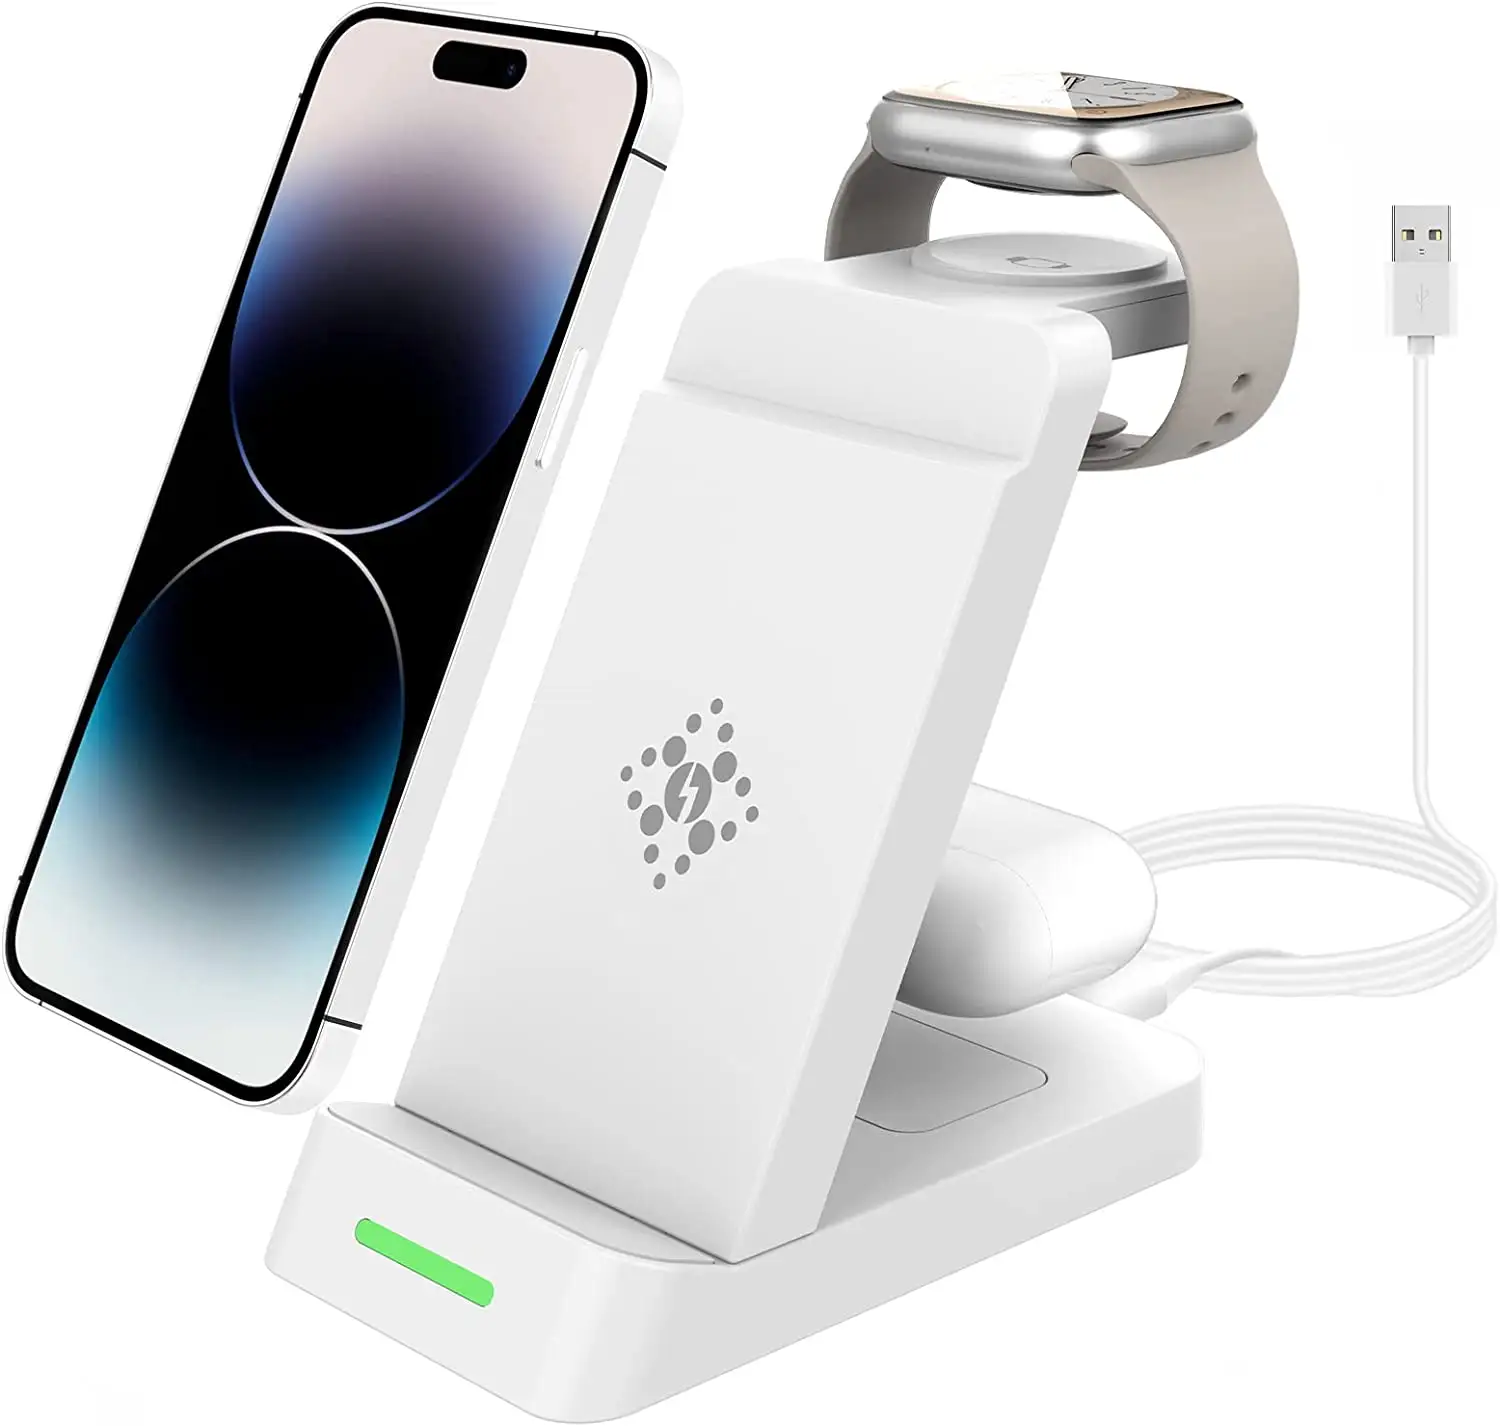 वायरलेस चार्जर खड़े हो जाओ 1 में 3 के लिए एप्पल के लिए तेजी से वायरलेस चार्ज स्टेशन डॉक घड़ी Airpods प्रो के लिए iPhone 14 प्रो मैक्स और सभी